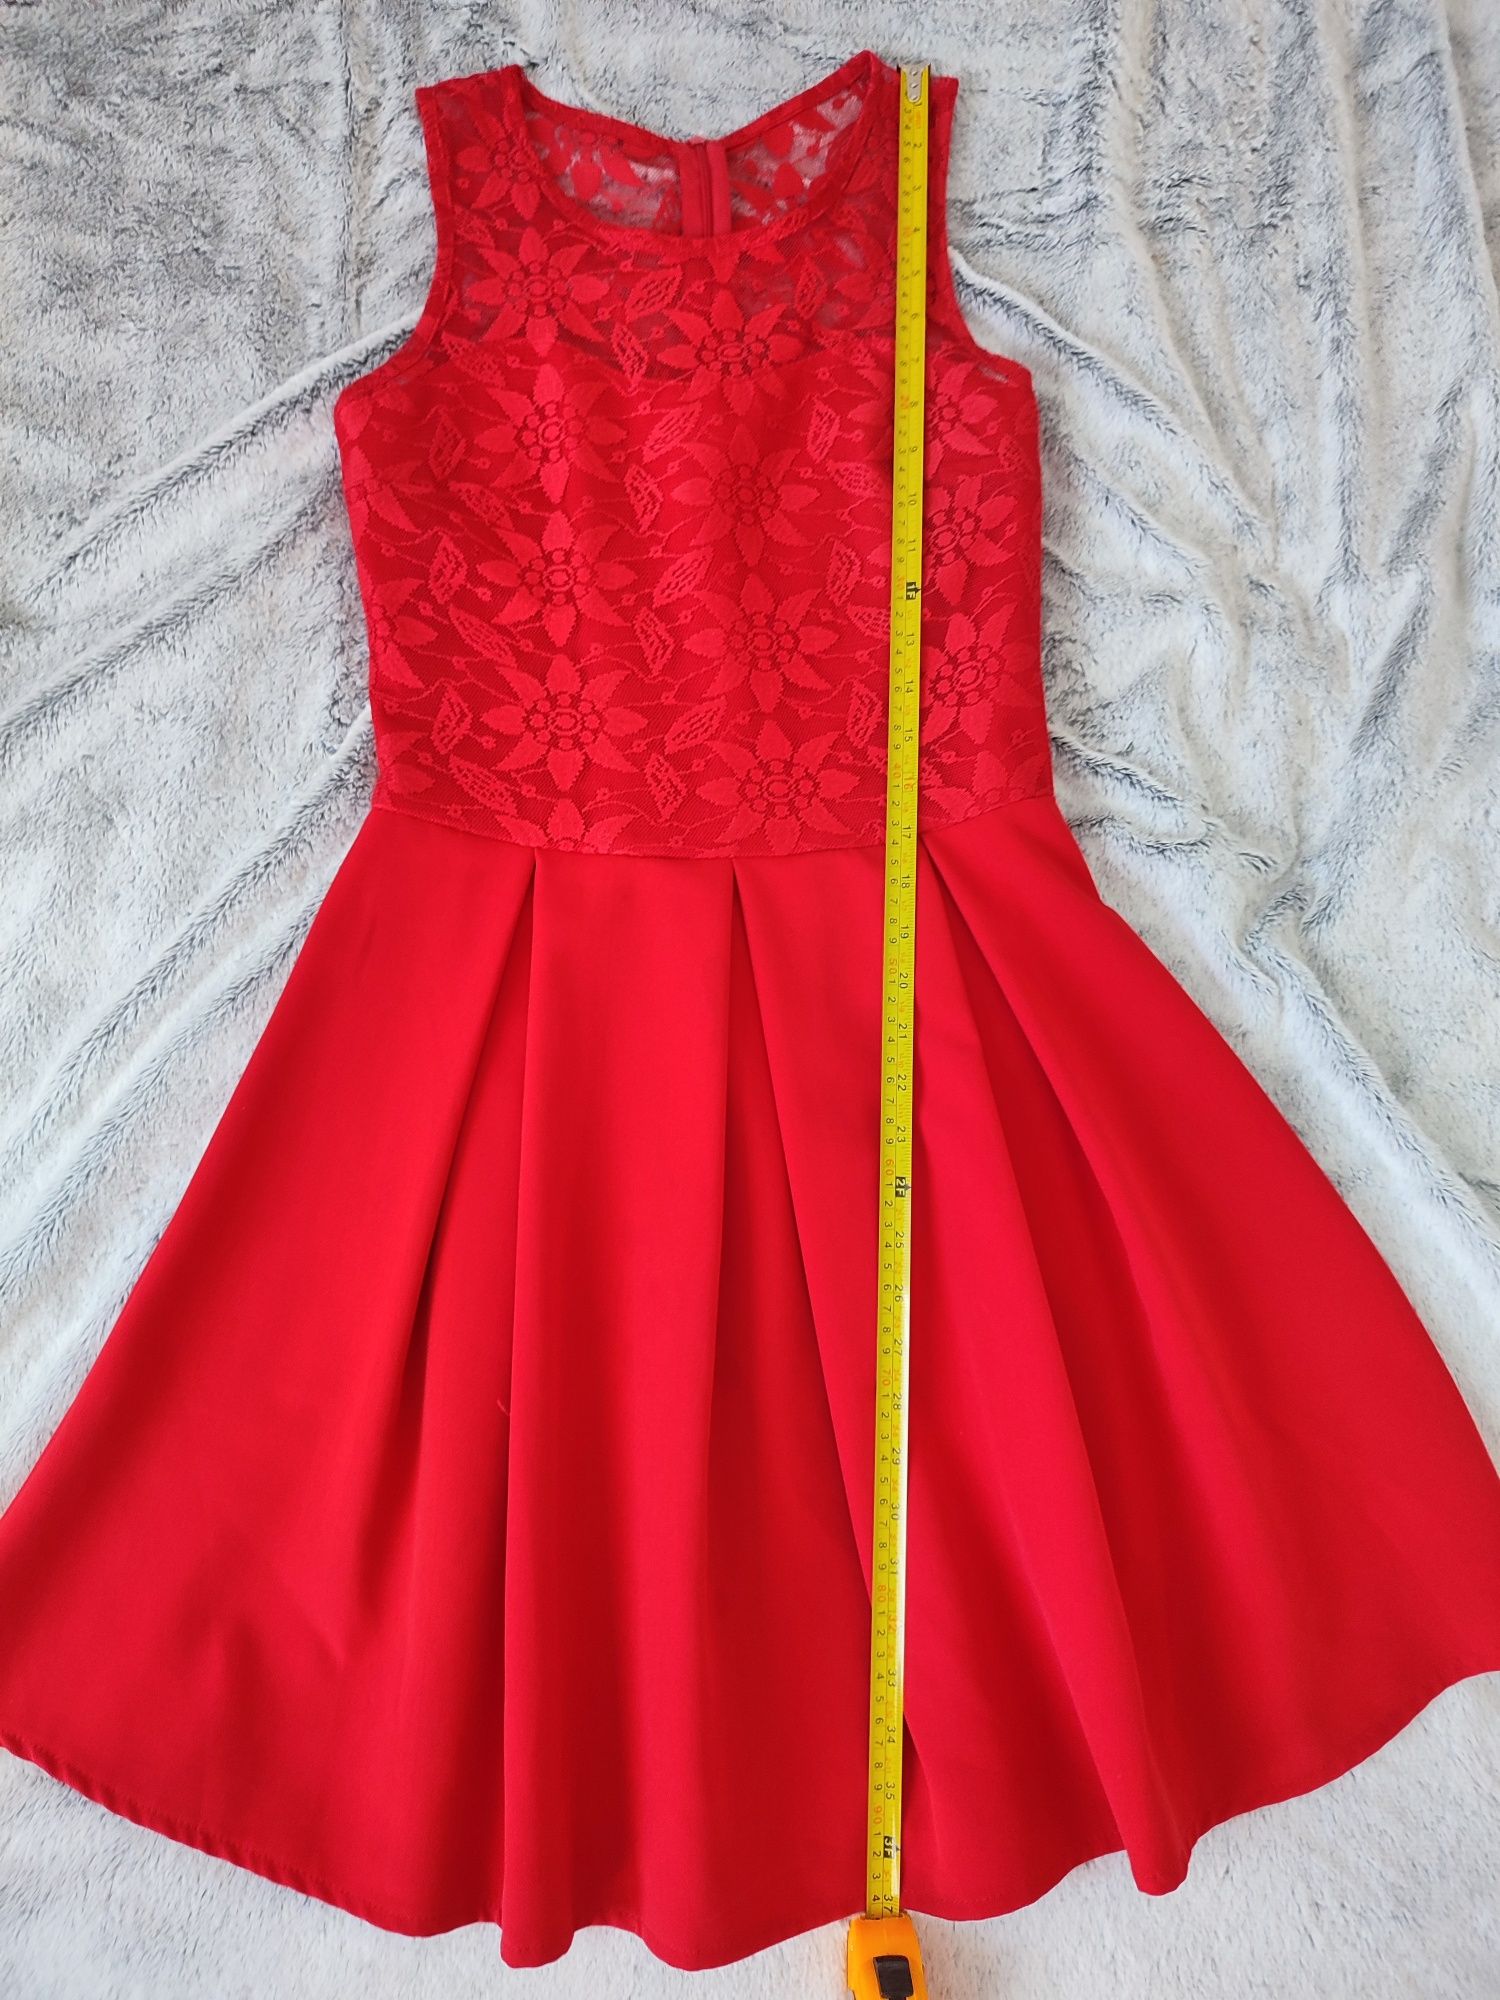 Czerwona sukienka koronkowa 36 na wesele